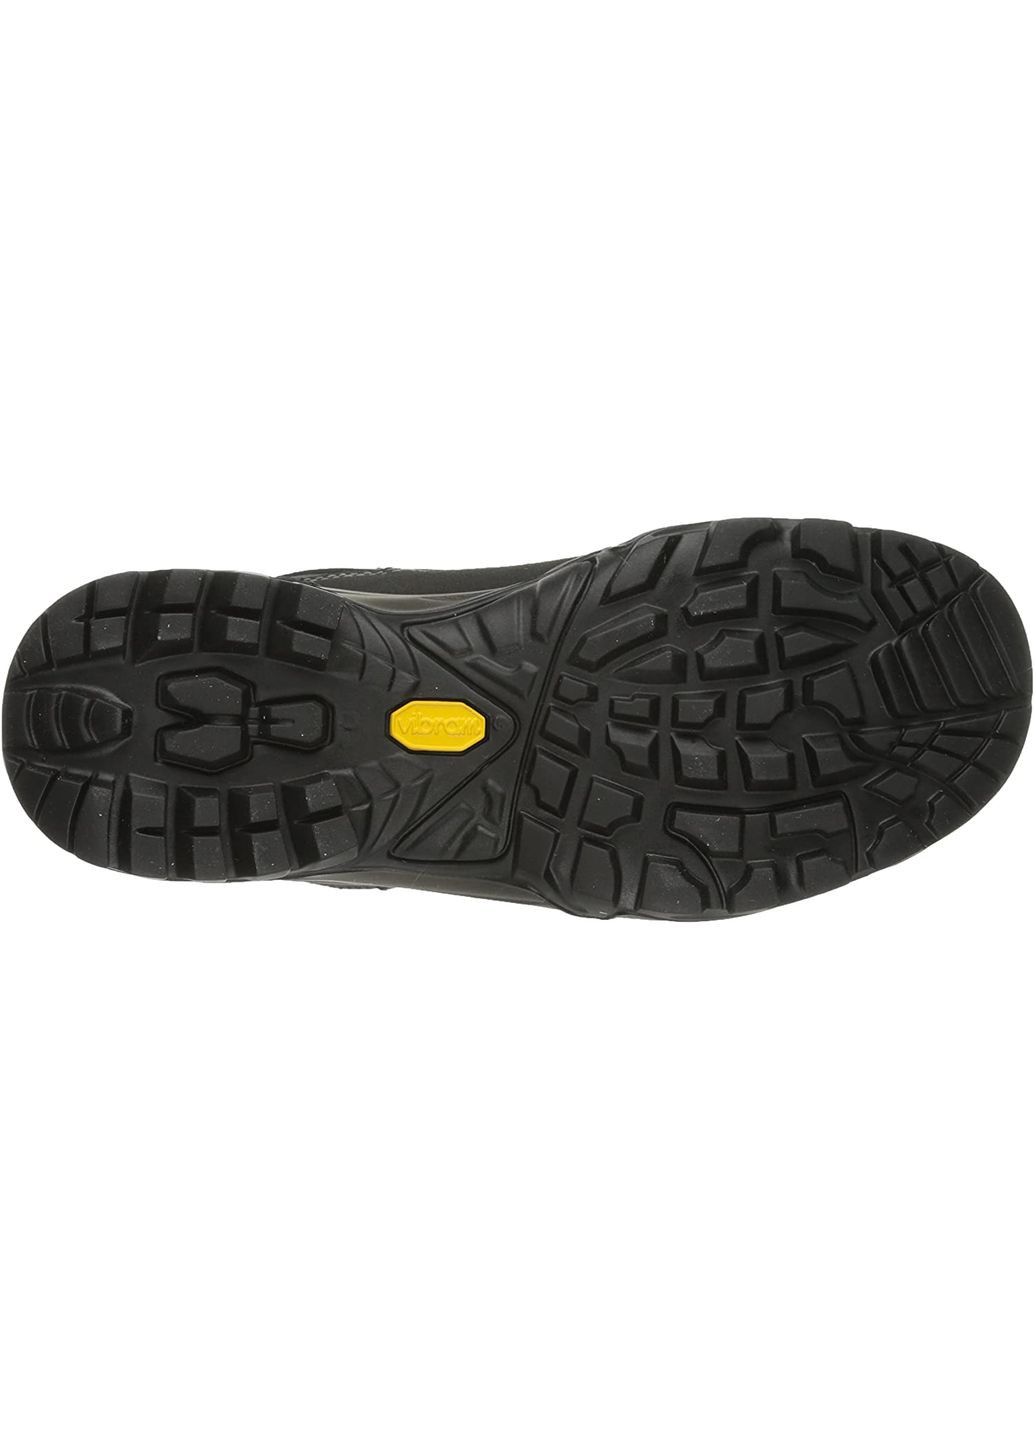 Цветные осенние ботинки mistral gtx черный-коричневый Scarpa